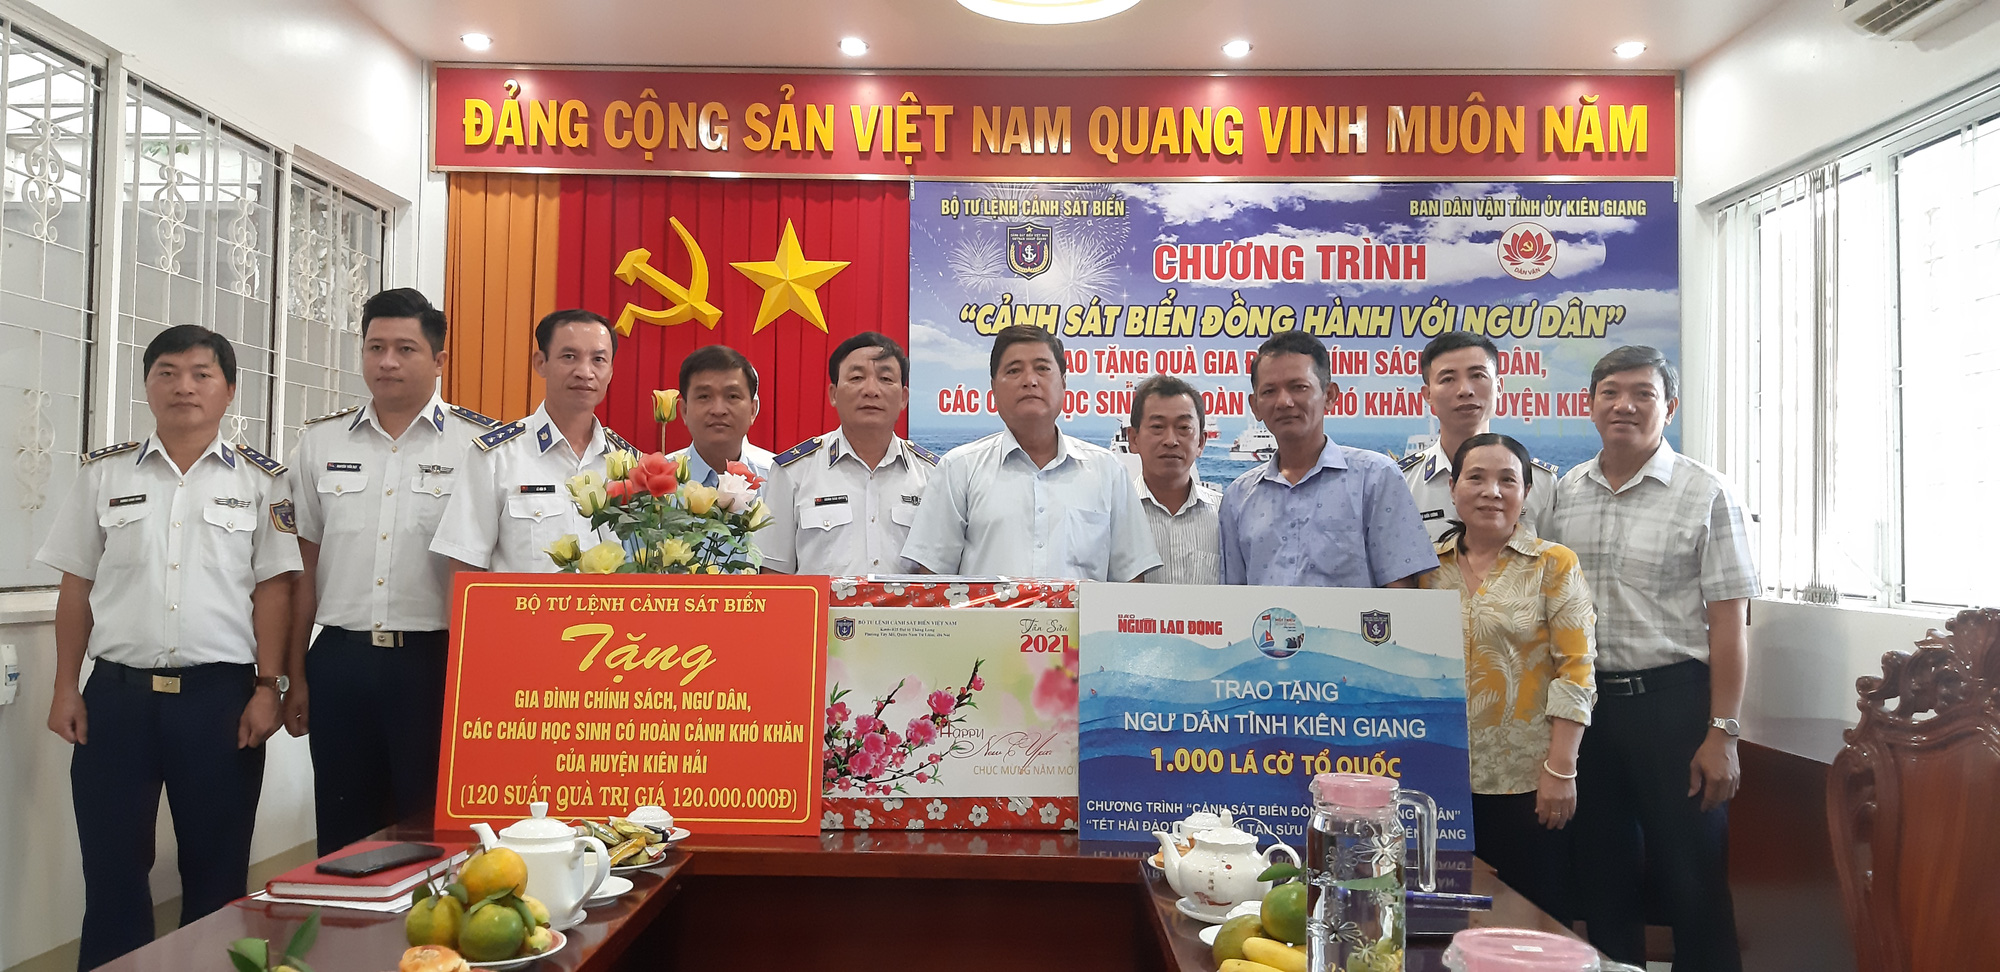 Báo Người Lao Động cùng Cảnh sát biển Việt Nam trao cờ Tổ quốc và quà Tết cho ngư dân Kiên Giang - Ảnh 4.